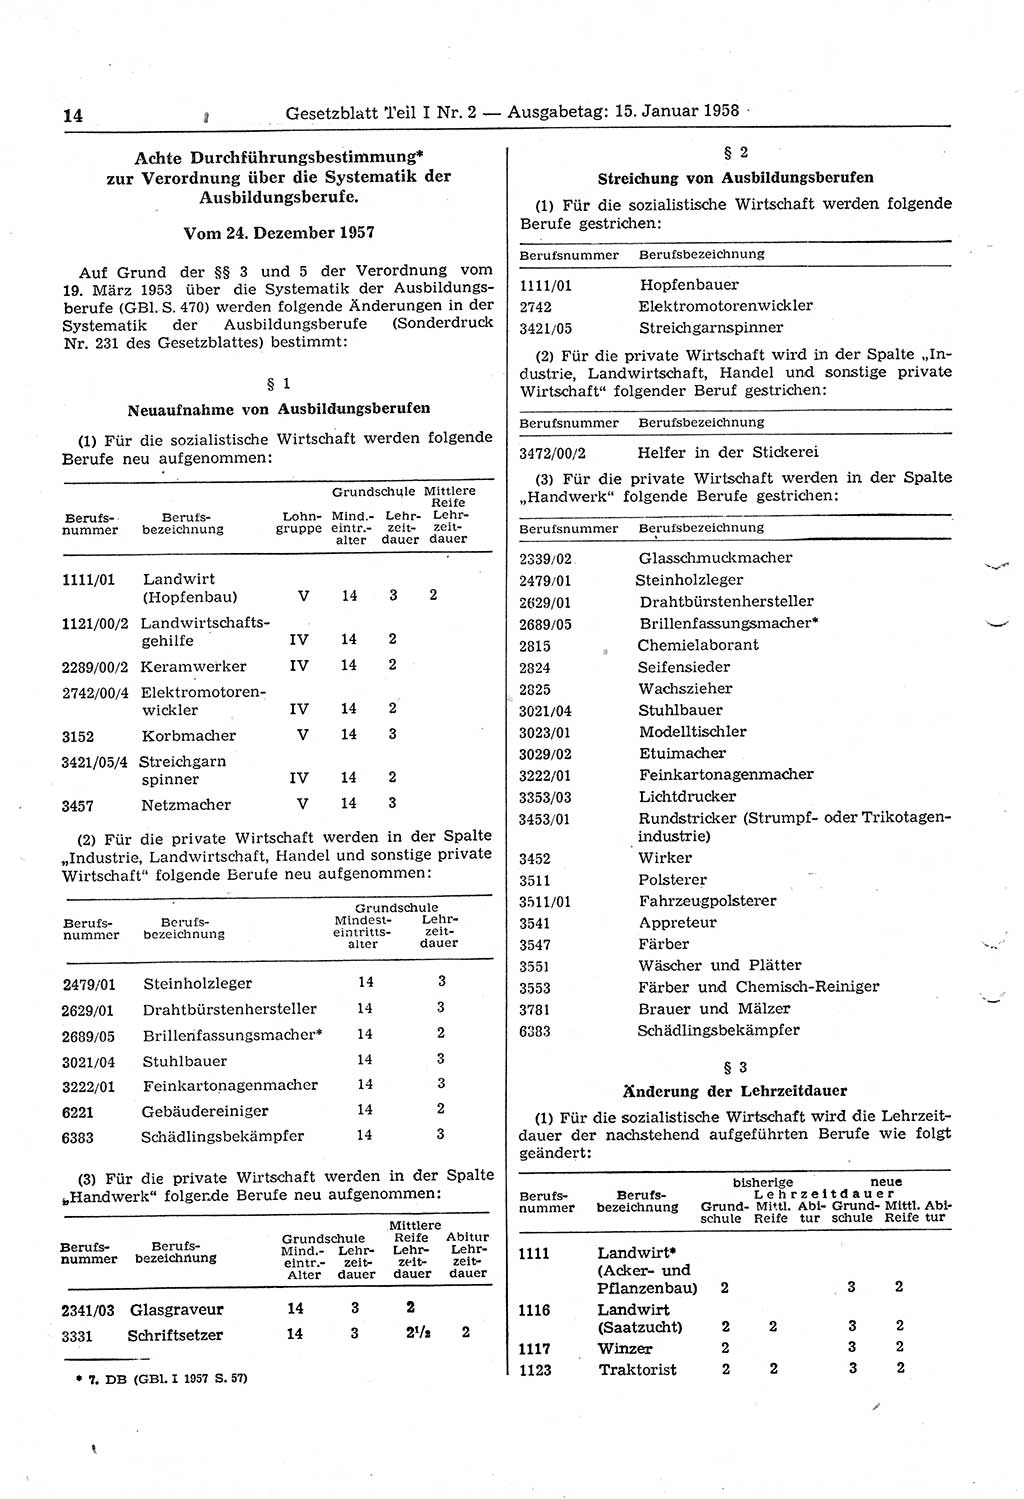 Gesetzblatt (GBl.) der Deutschen Demokratischen Republik (DDR) Teil Ⅰ 1958, Seite 14 (GBl. DDR Ⅰ 1958, S. 14)